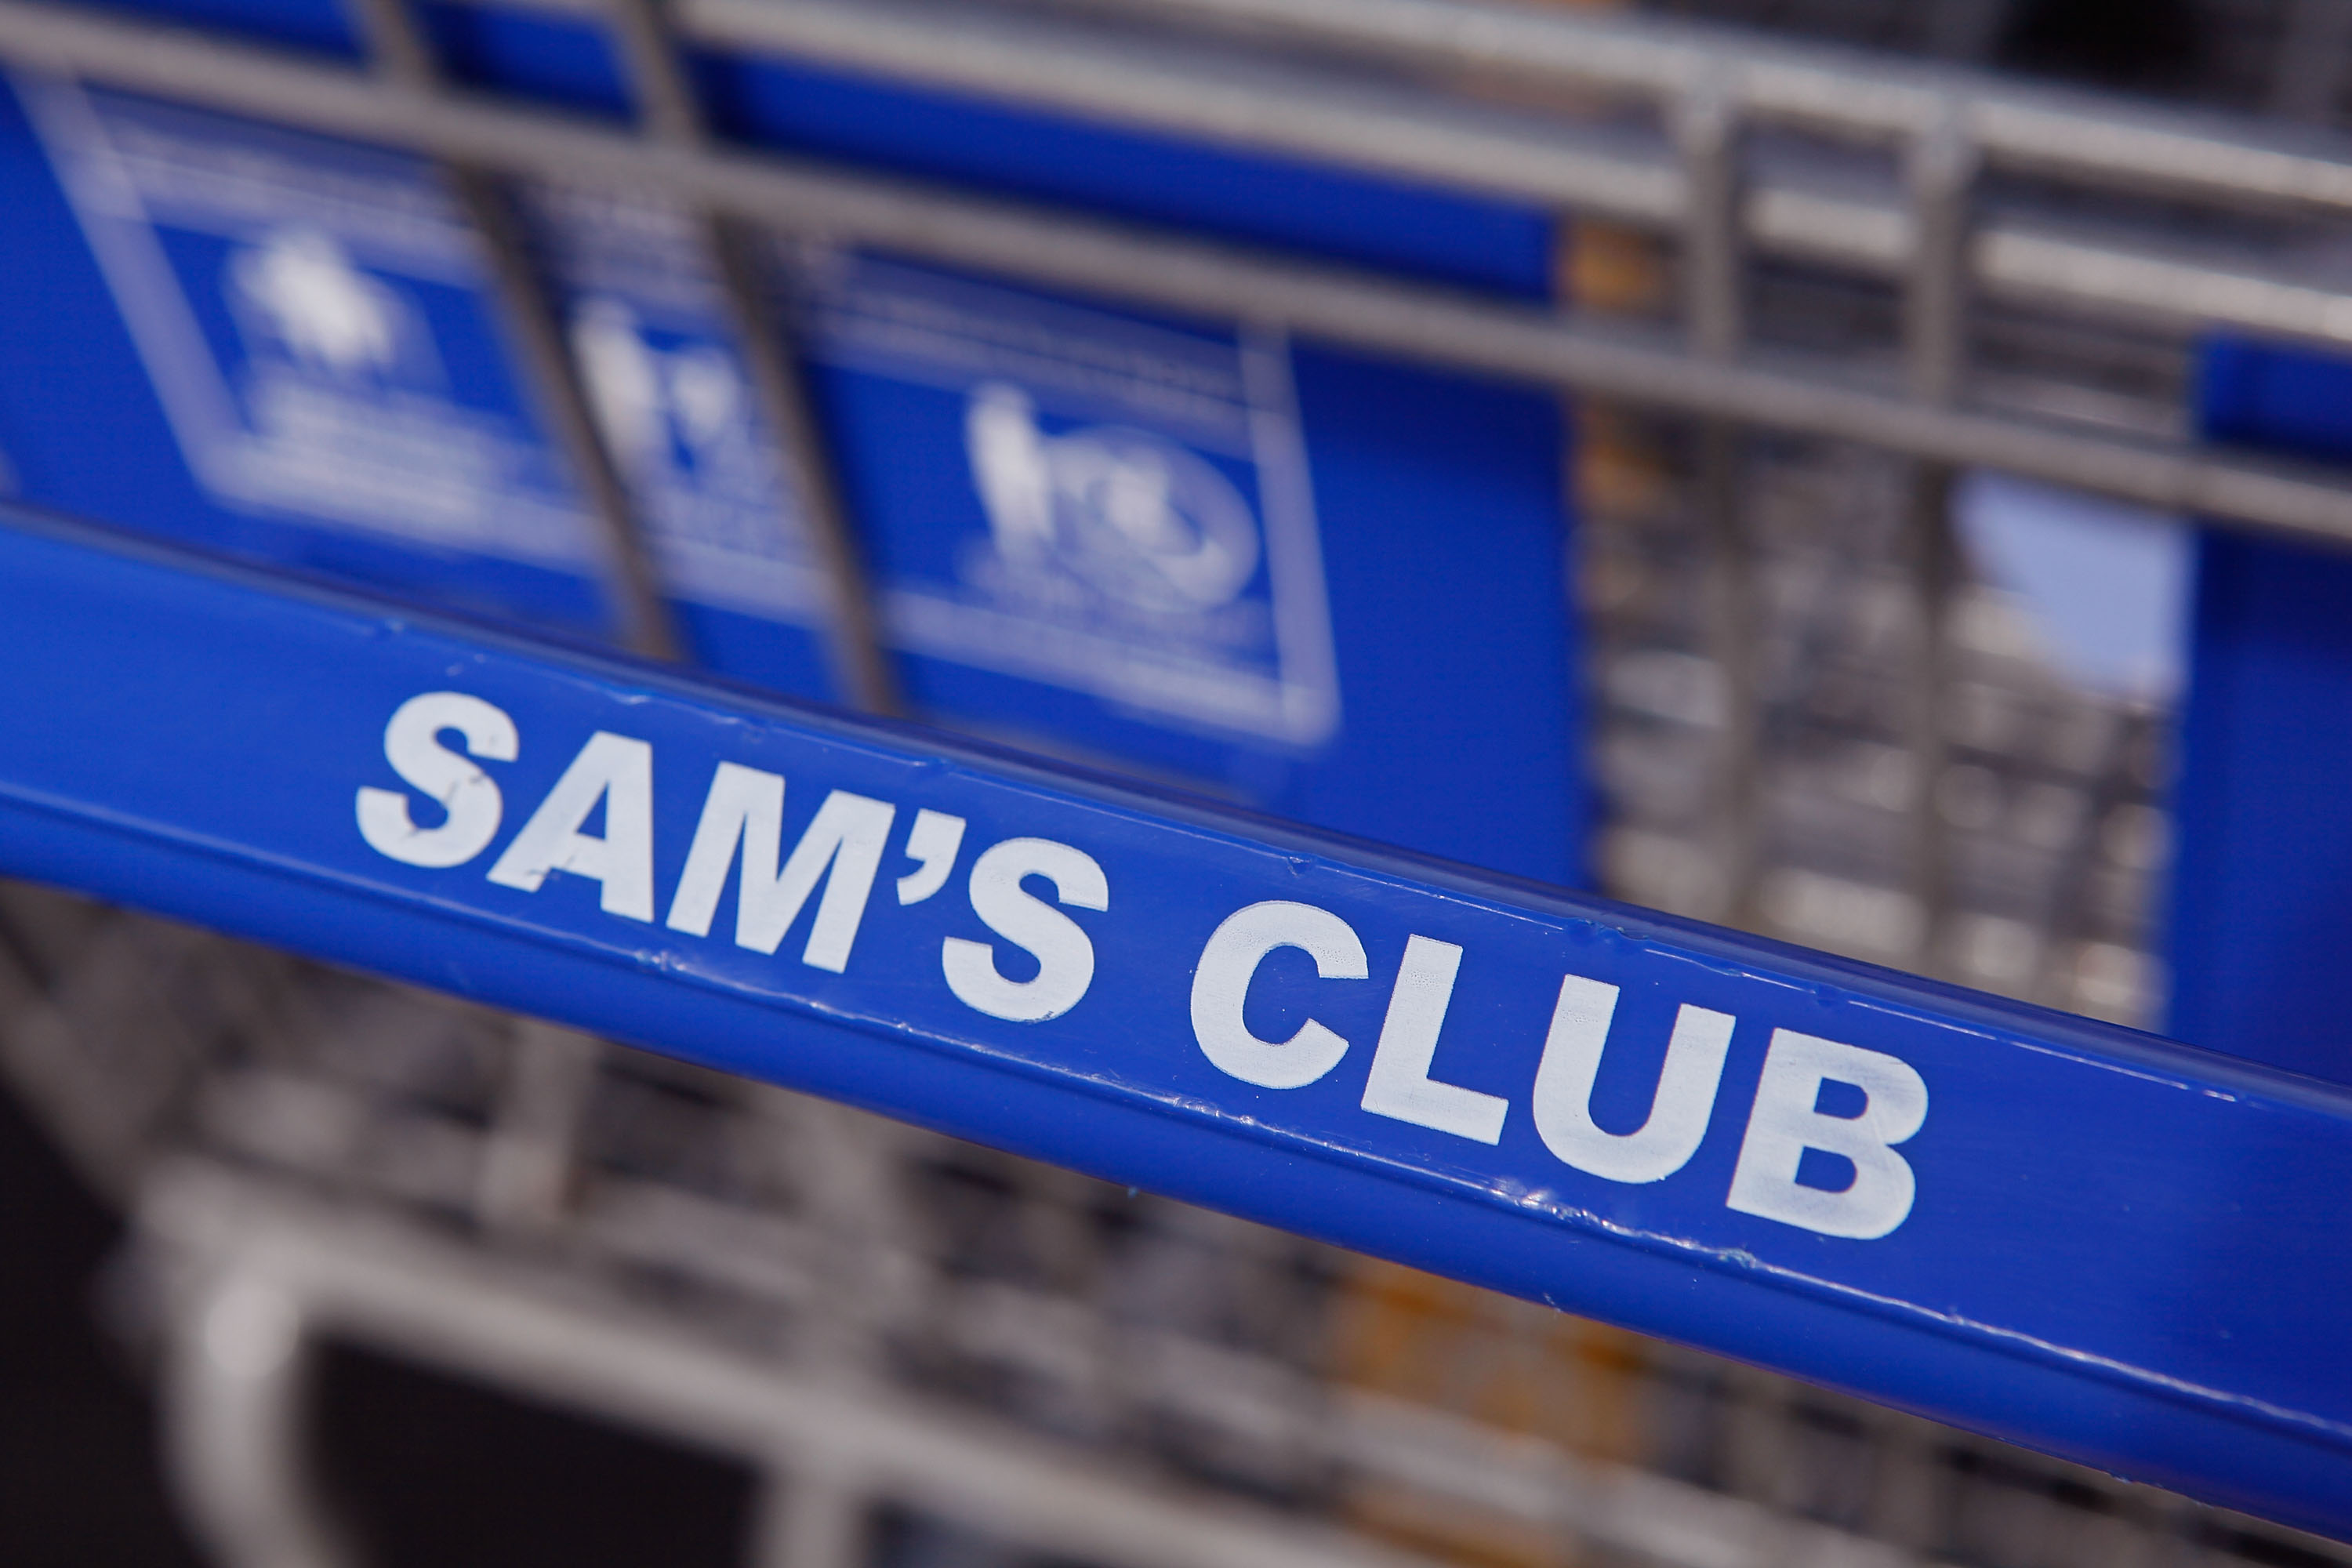 Sam's Club raises its annual membership